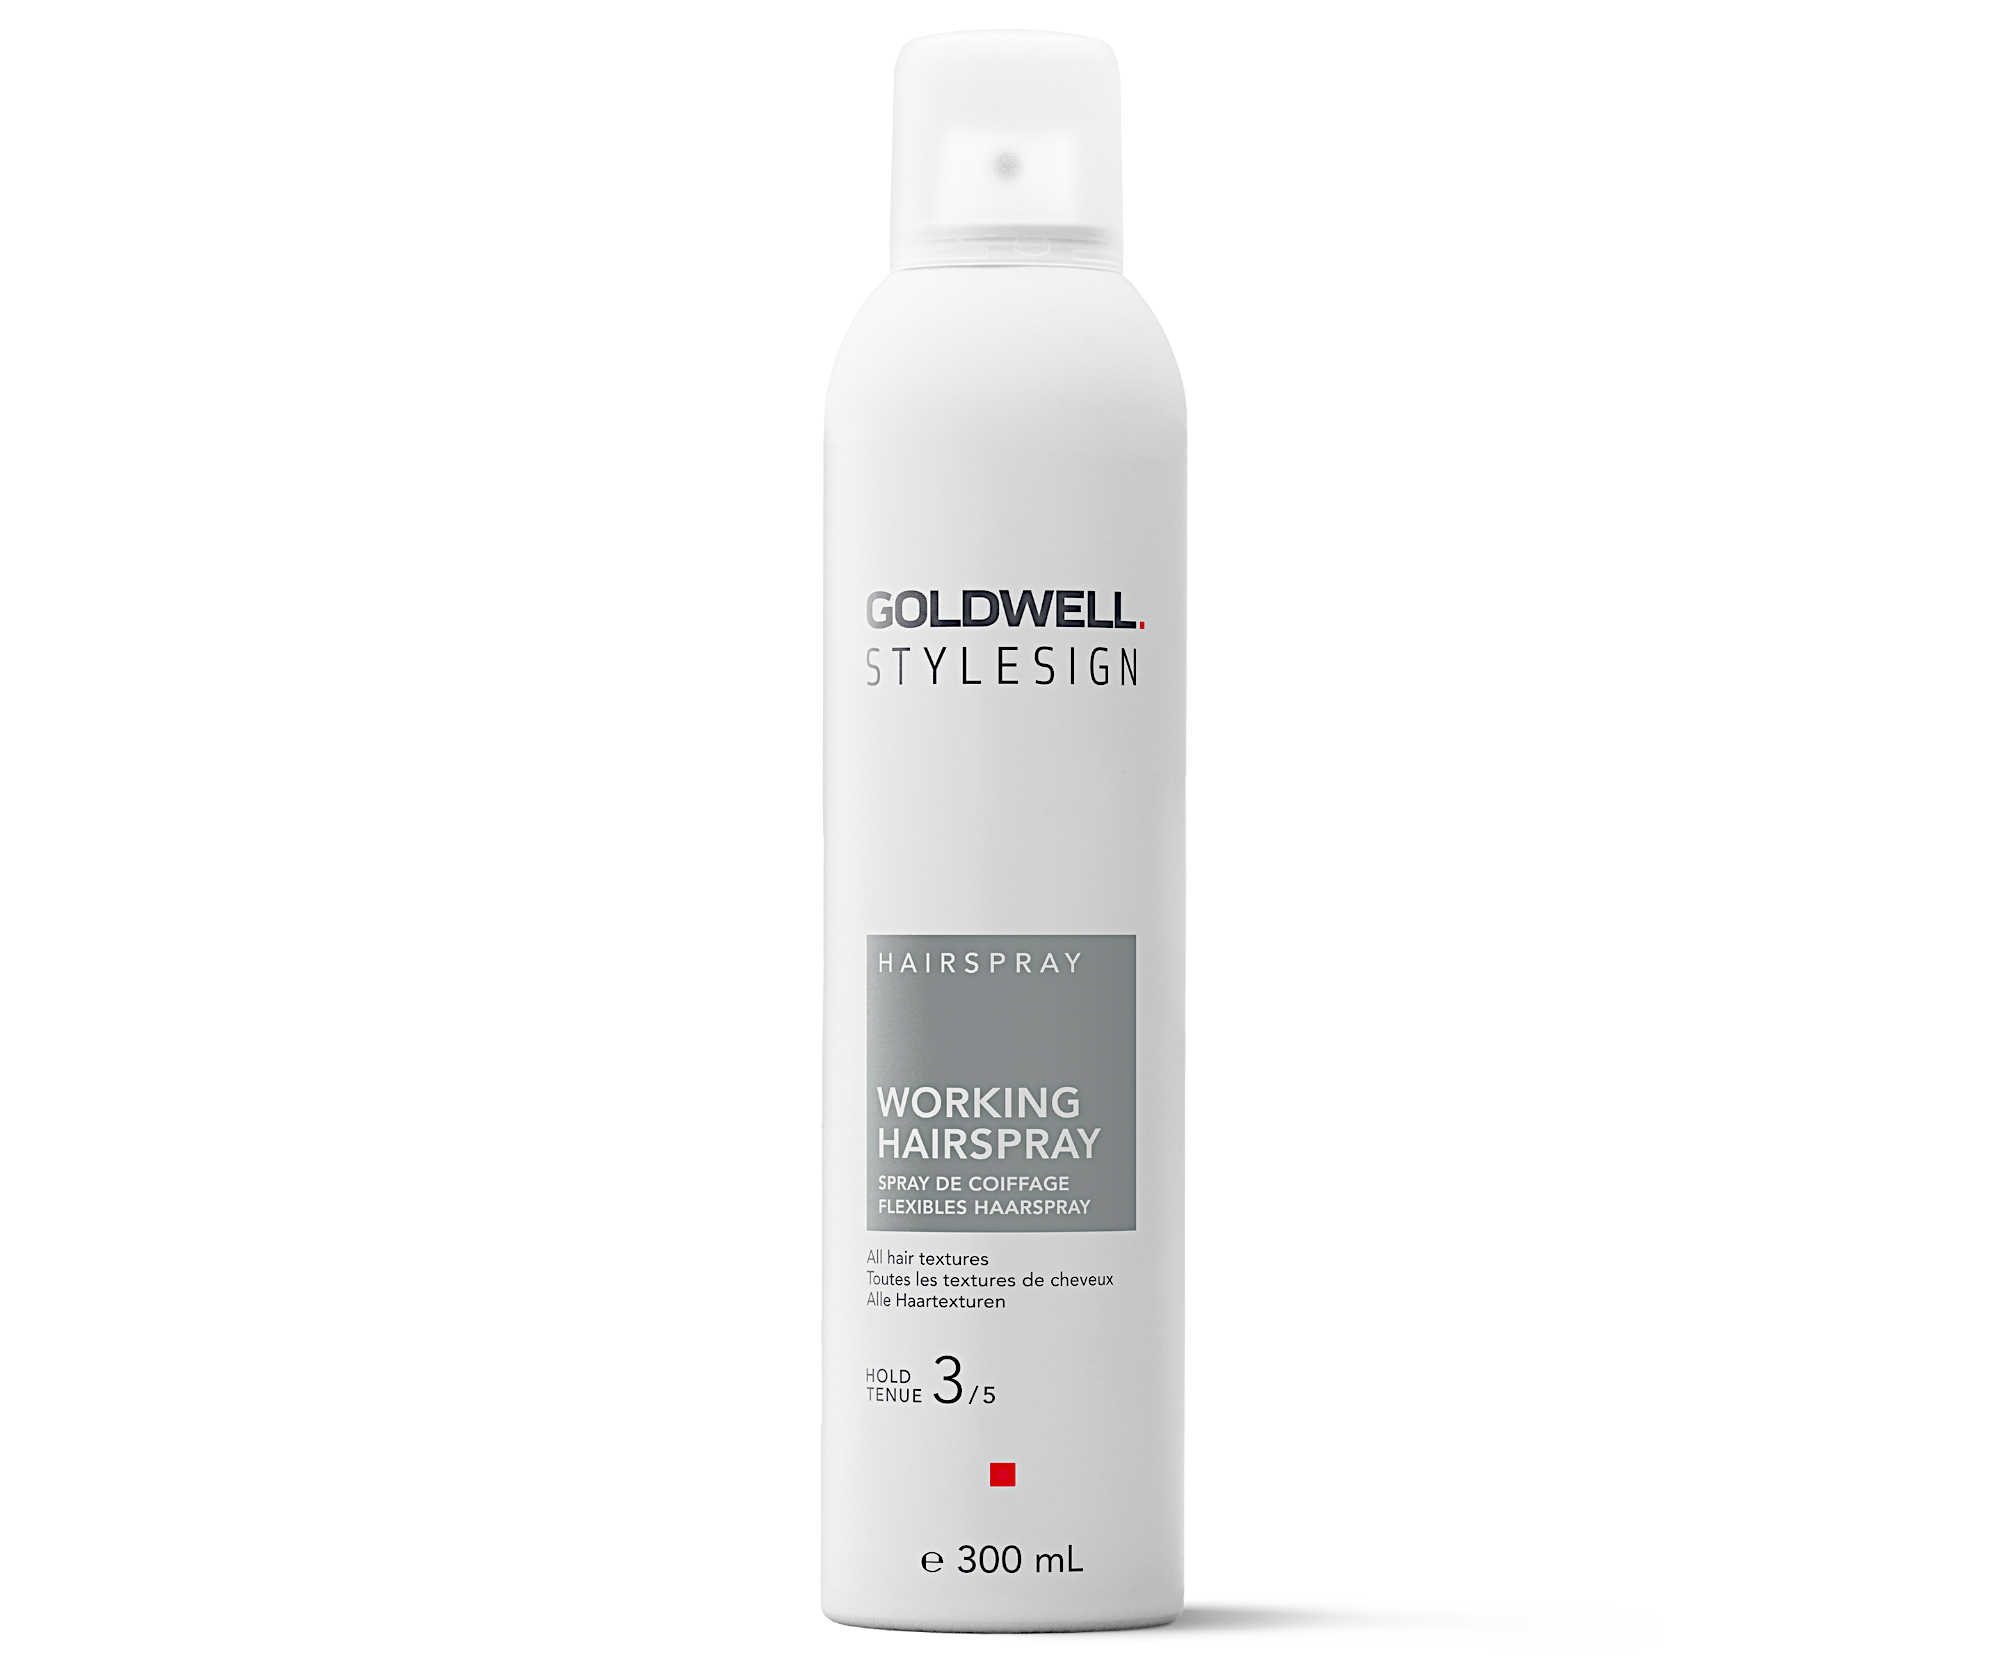 Flexibilní lak na vlasy se střední fixací Goldwell Stylesign Working Hairspray - 300 ml + dárek zdarma